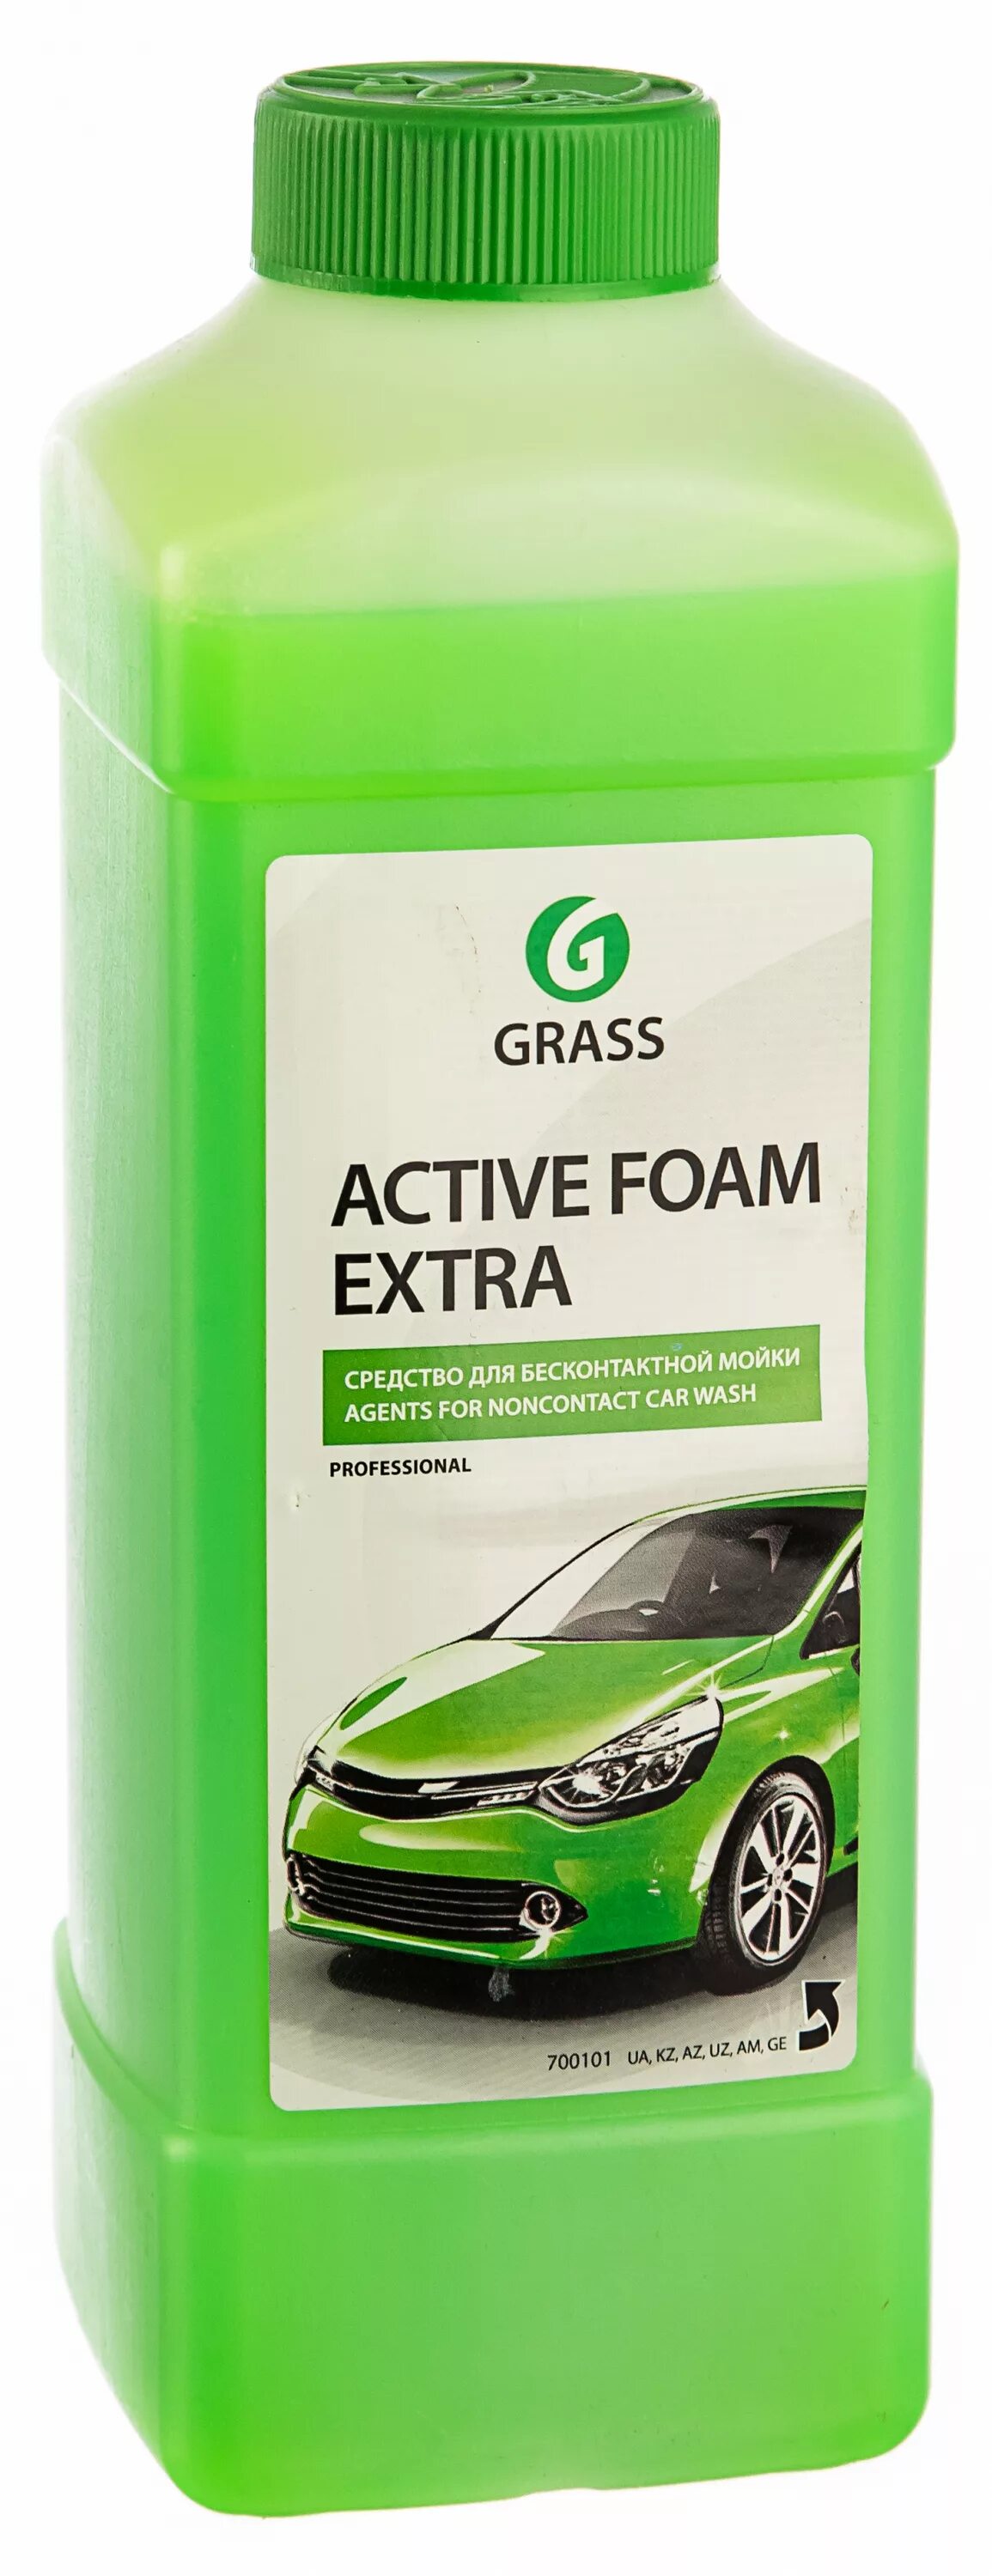 Пена грасс для бесконтактной мойки. 700101 Активная пена «Active Foam Extra» ( grass) 1 л. Химия для бесконтактной мойки Грасс. Grass Active Foam Extra 1 л. Шампунь Грасс для бесконтактной.